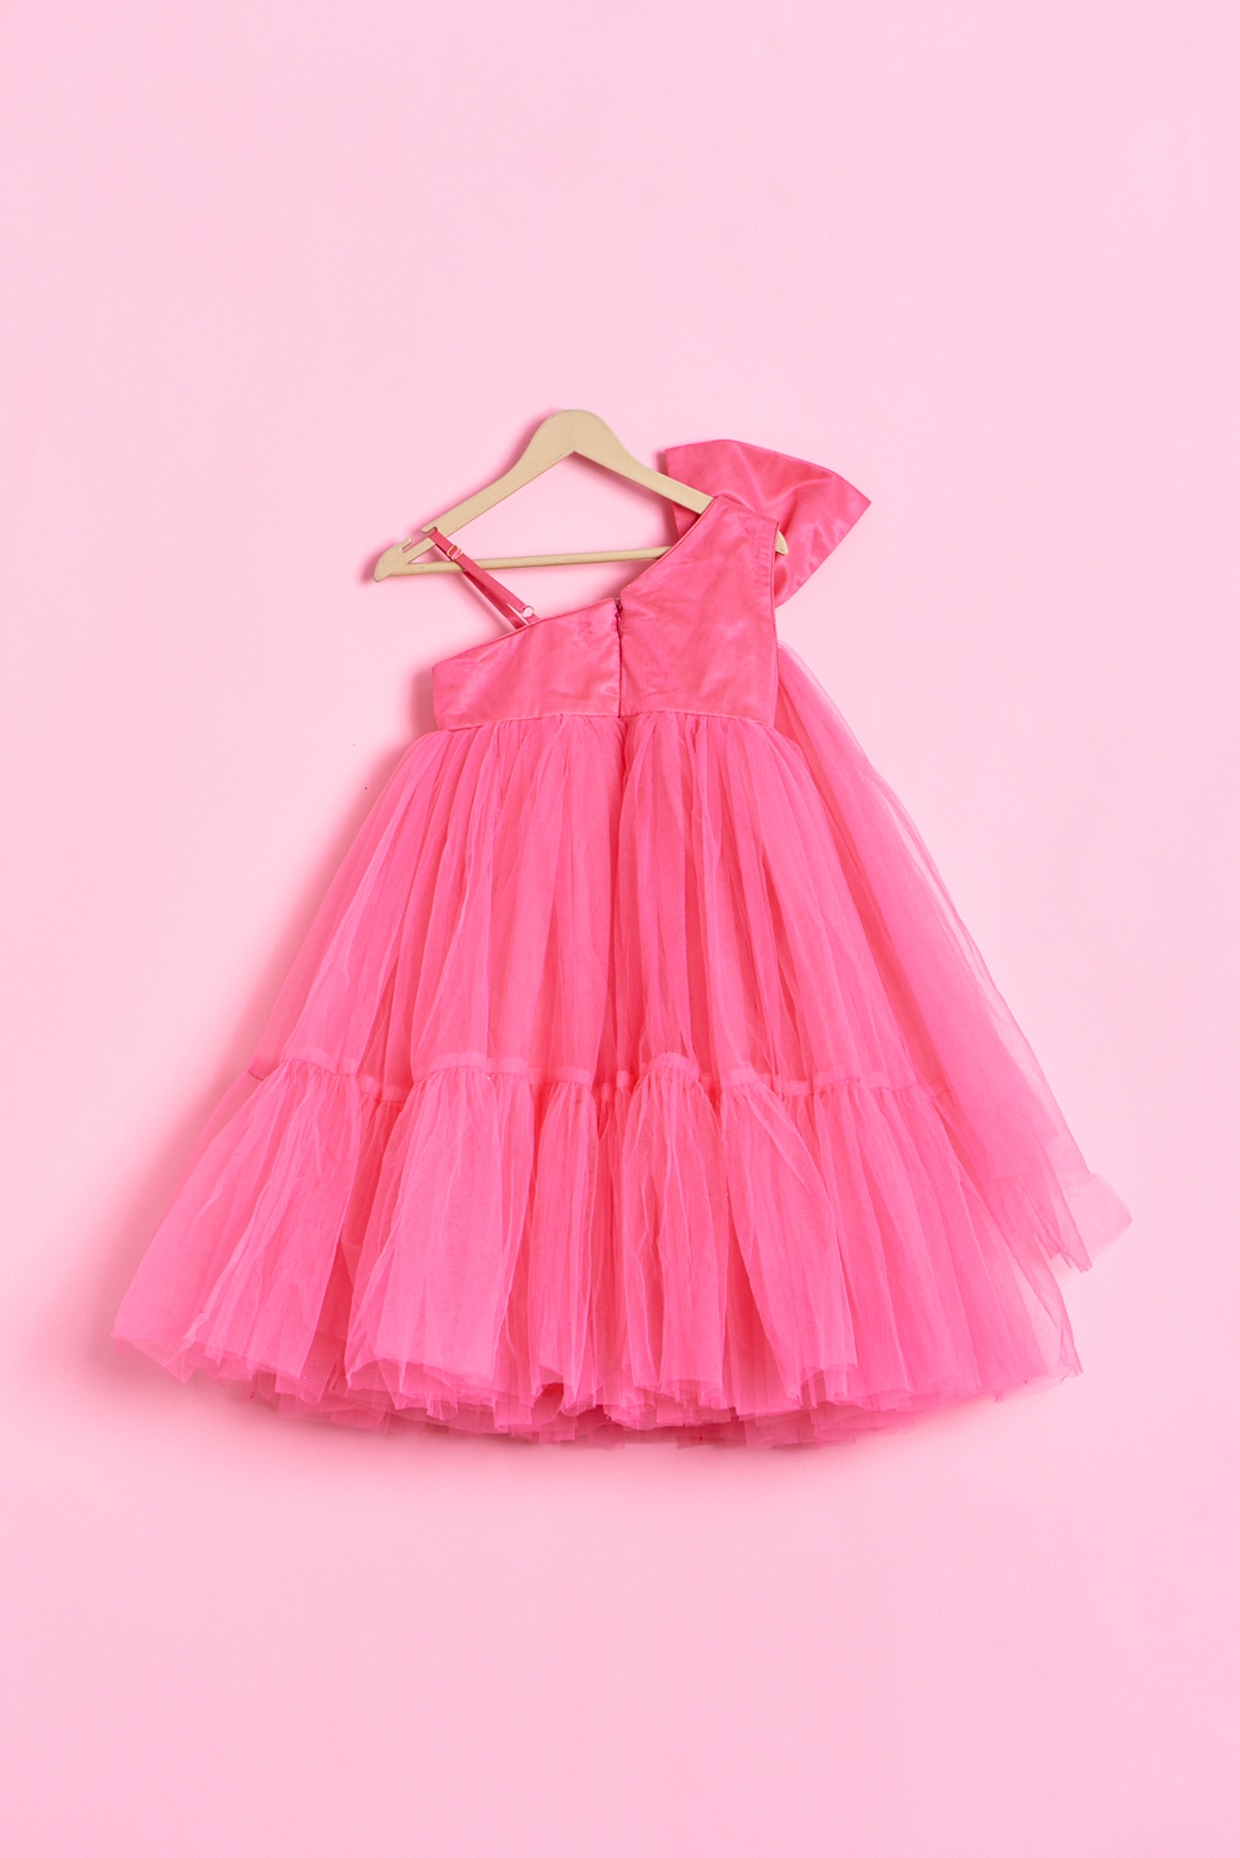 Tiger Mist - Neon Pink Dress on Designer Wardrobe